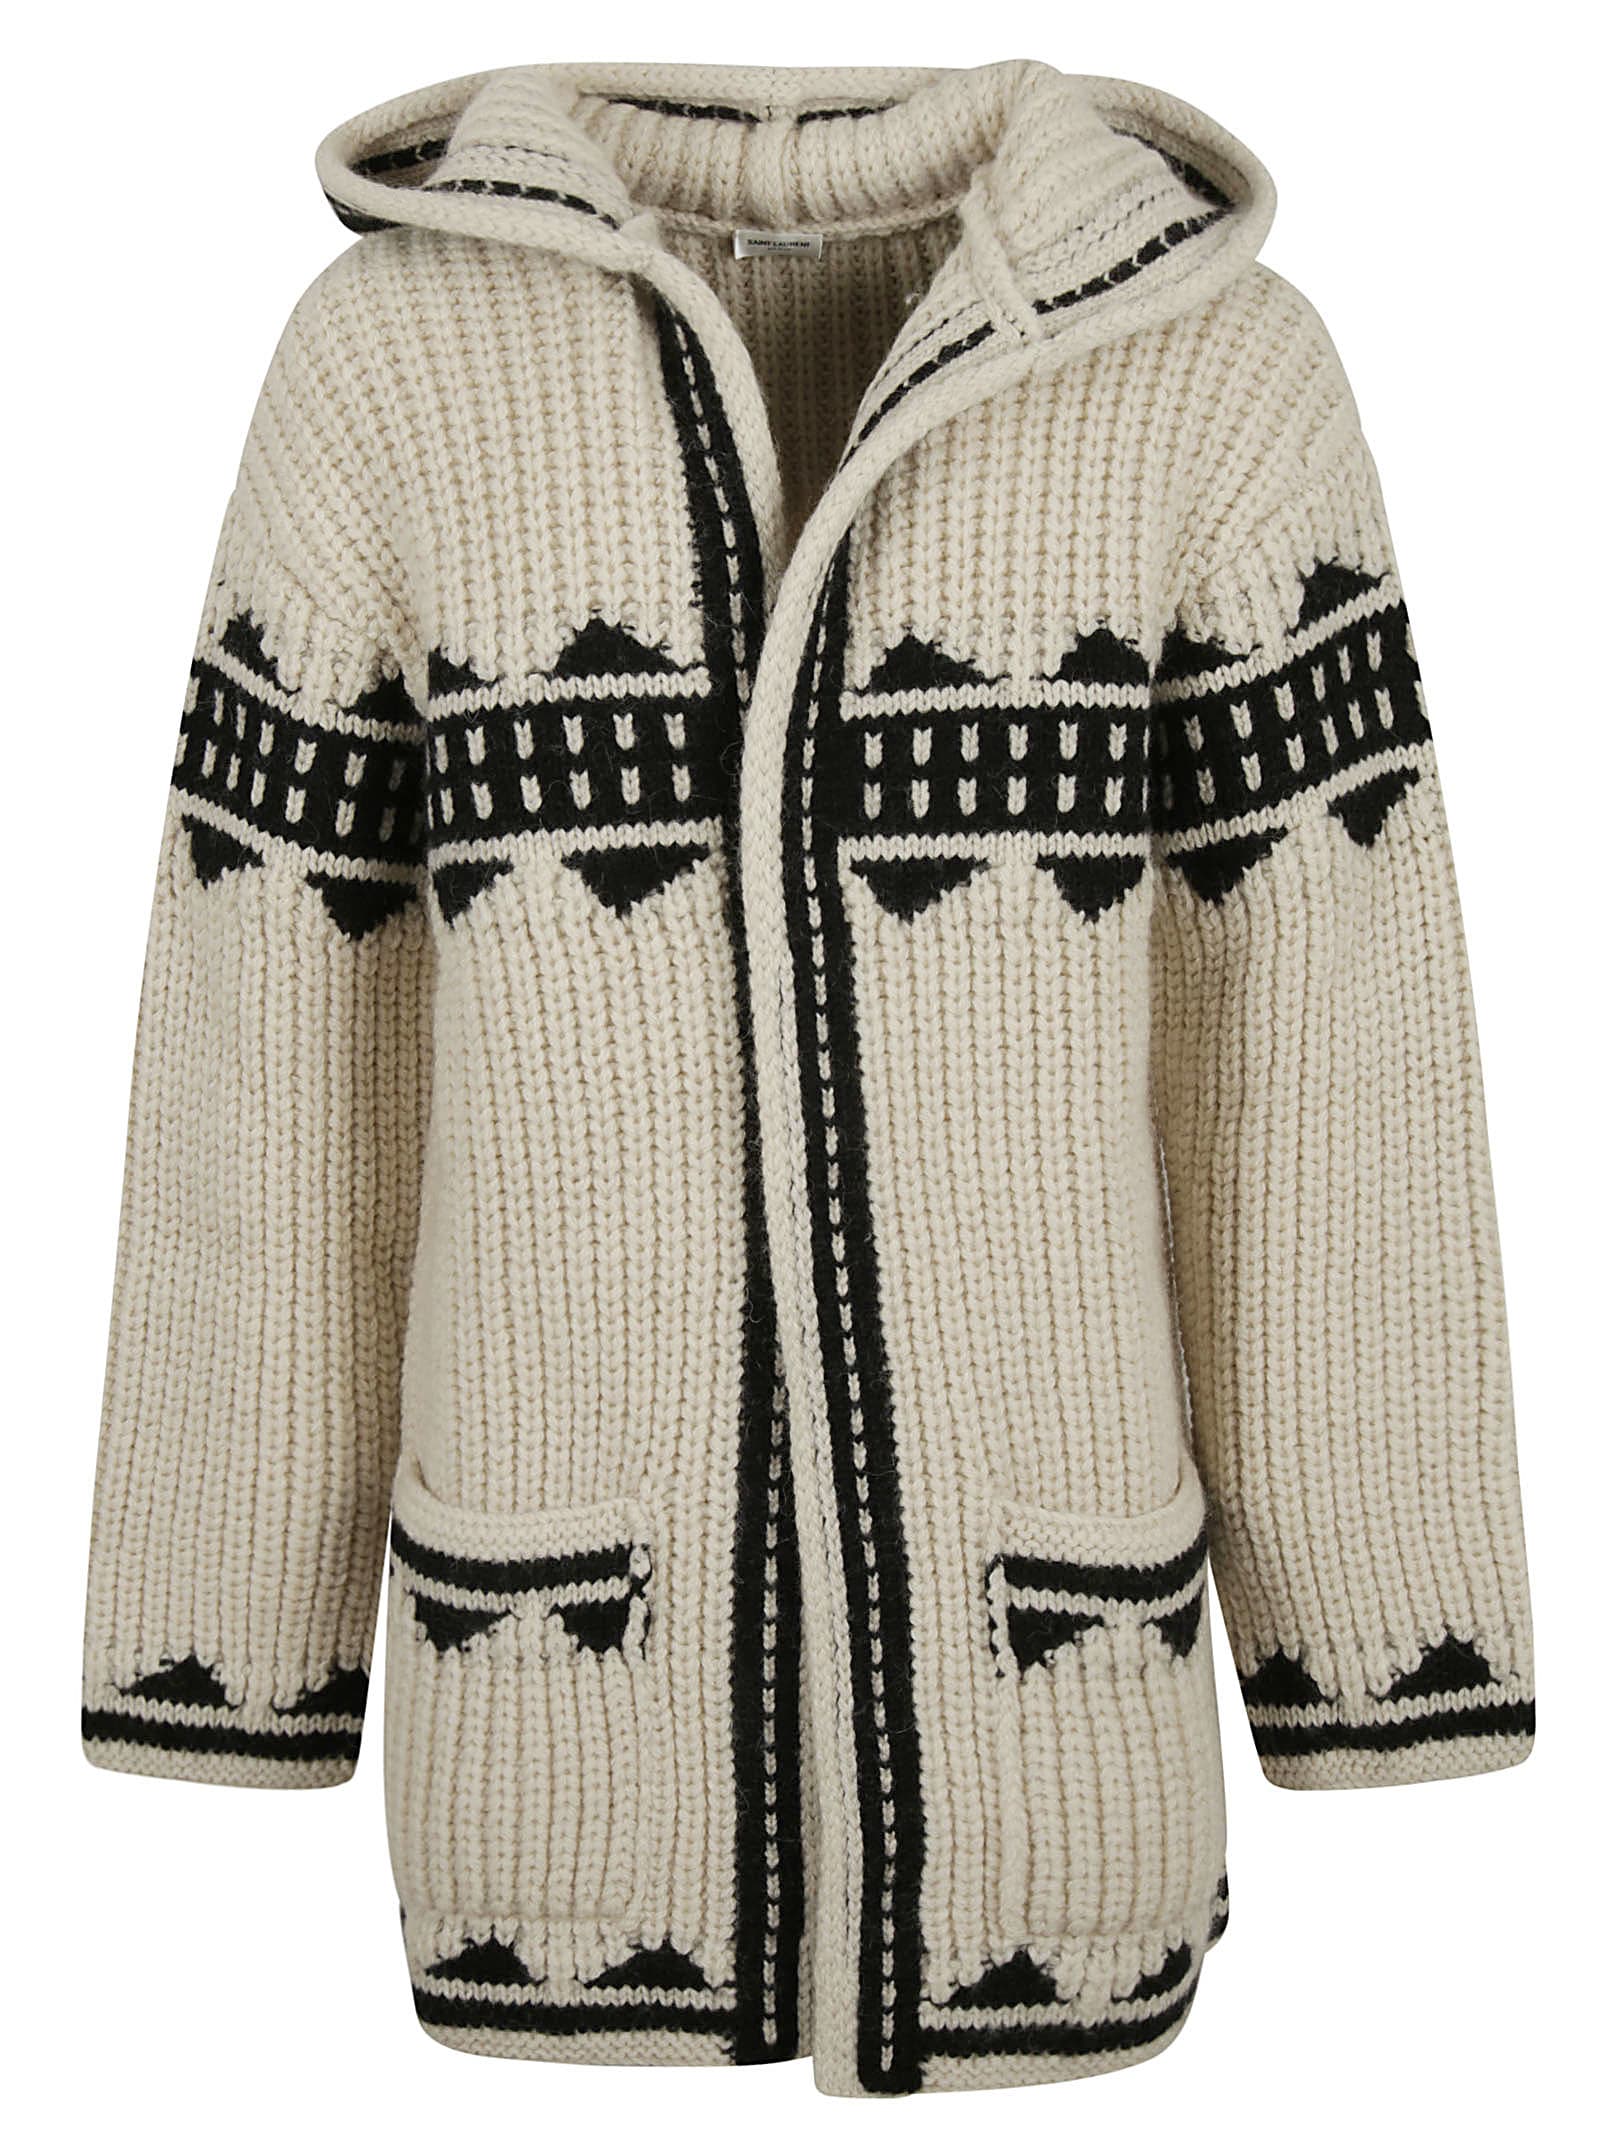 Saint Laurent Patterned Knit Cardigan